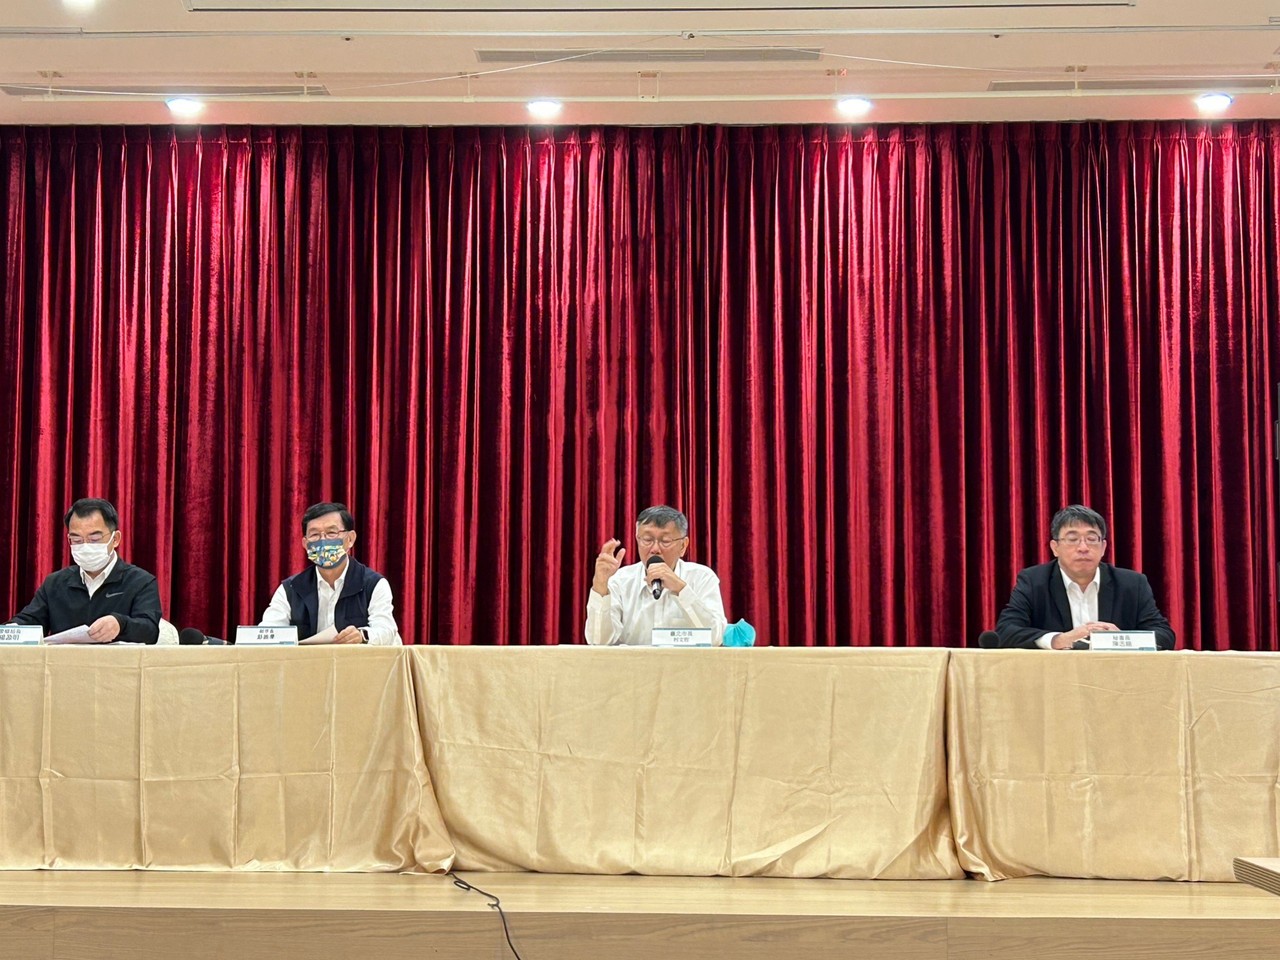 台北市长柯文哲(右2)今天举行记者会，批评他还没下台蓝绿两党就联合污钱。记者徐伟真／摄影